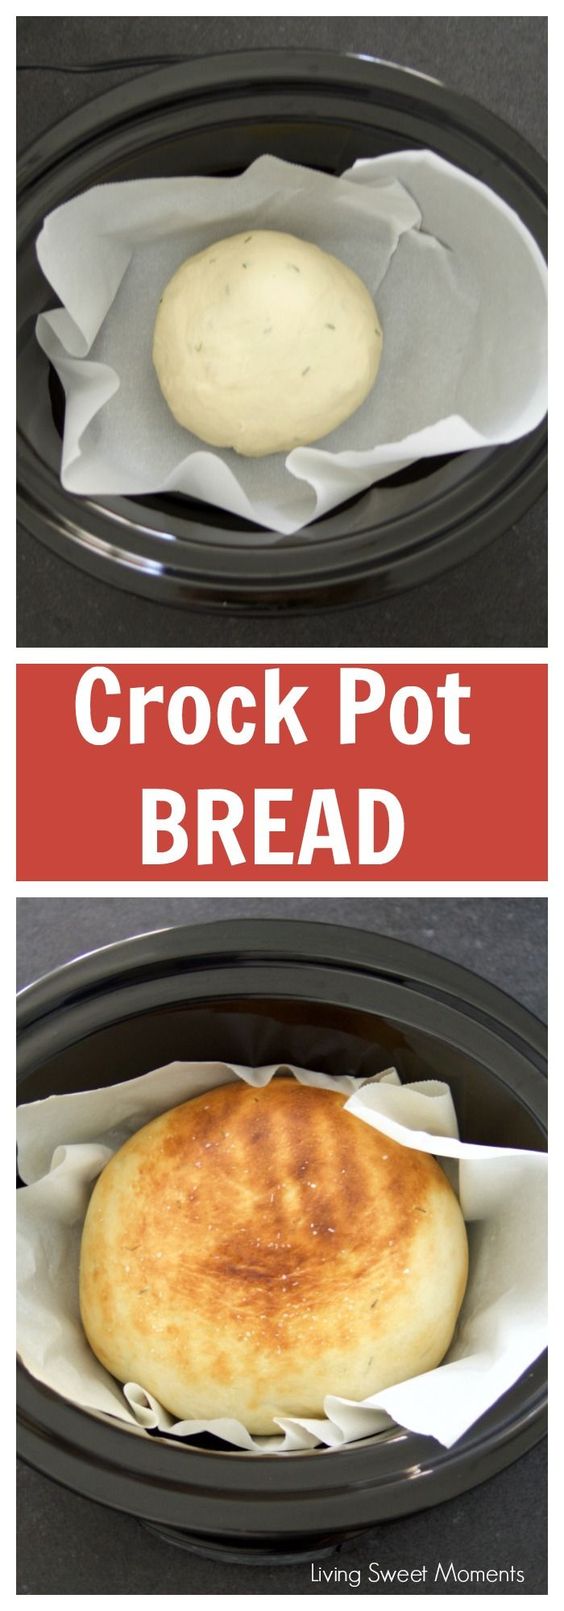 crock pot recipes